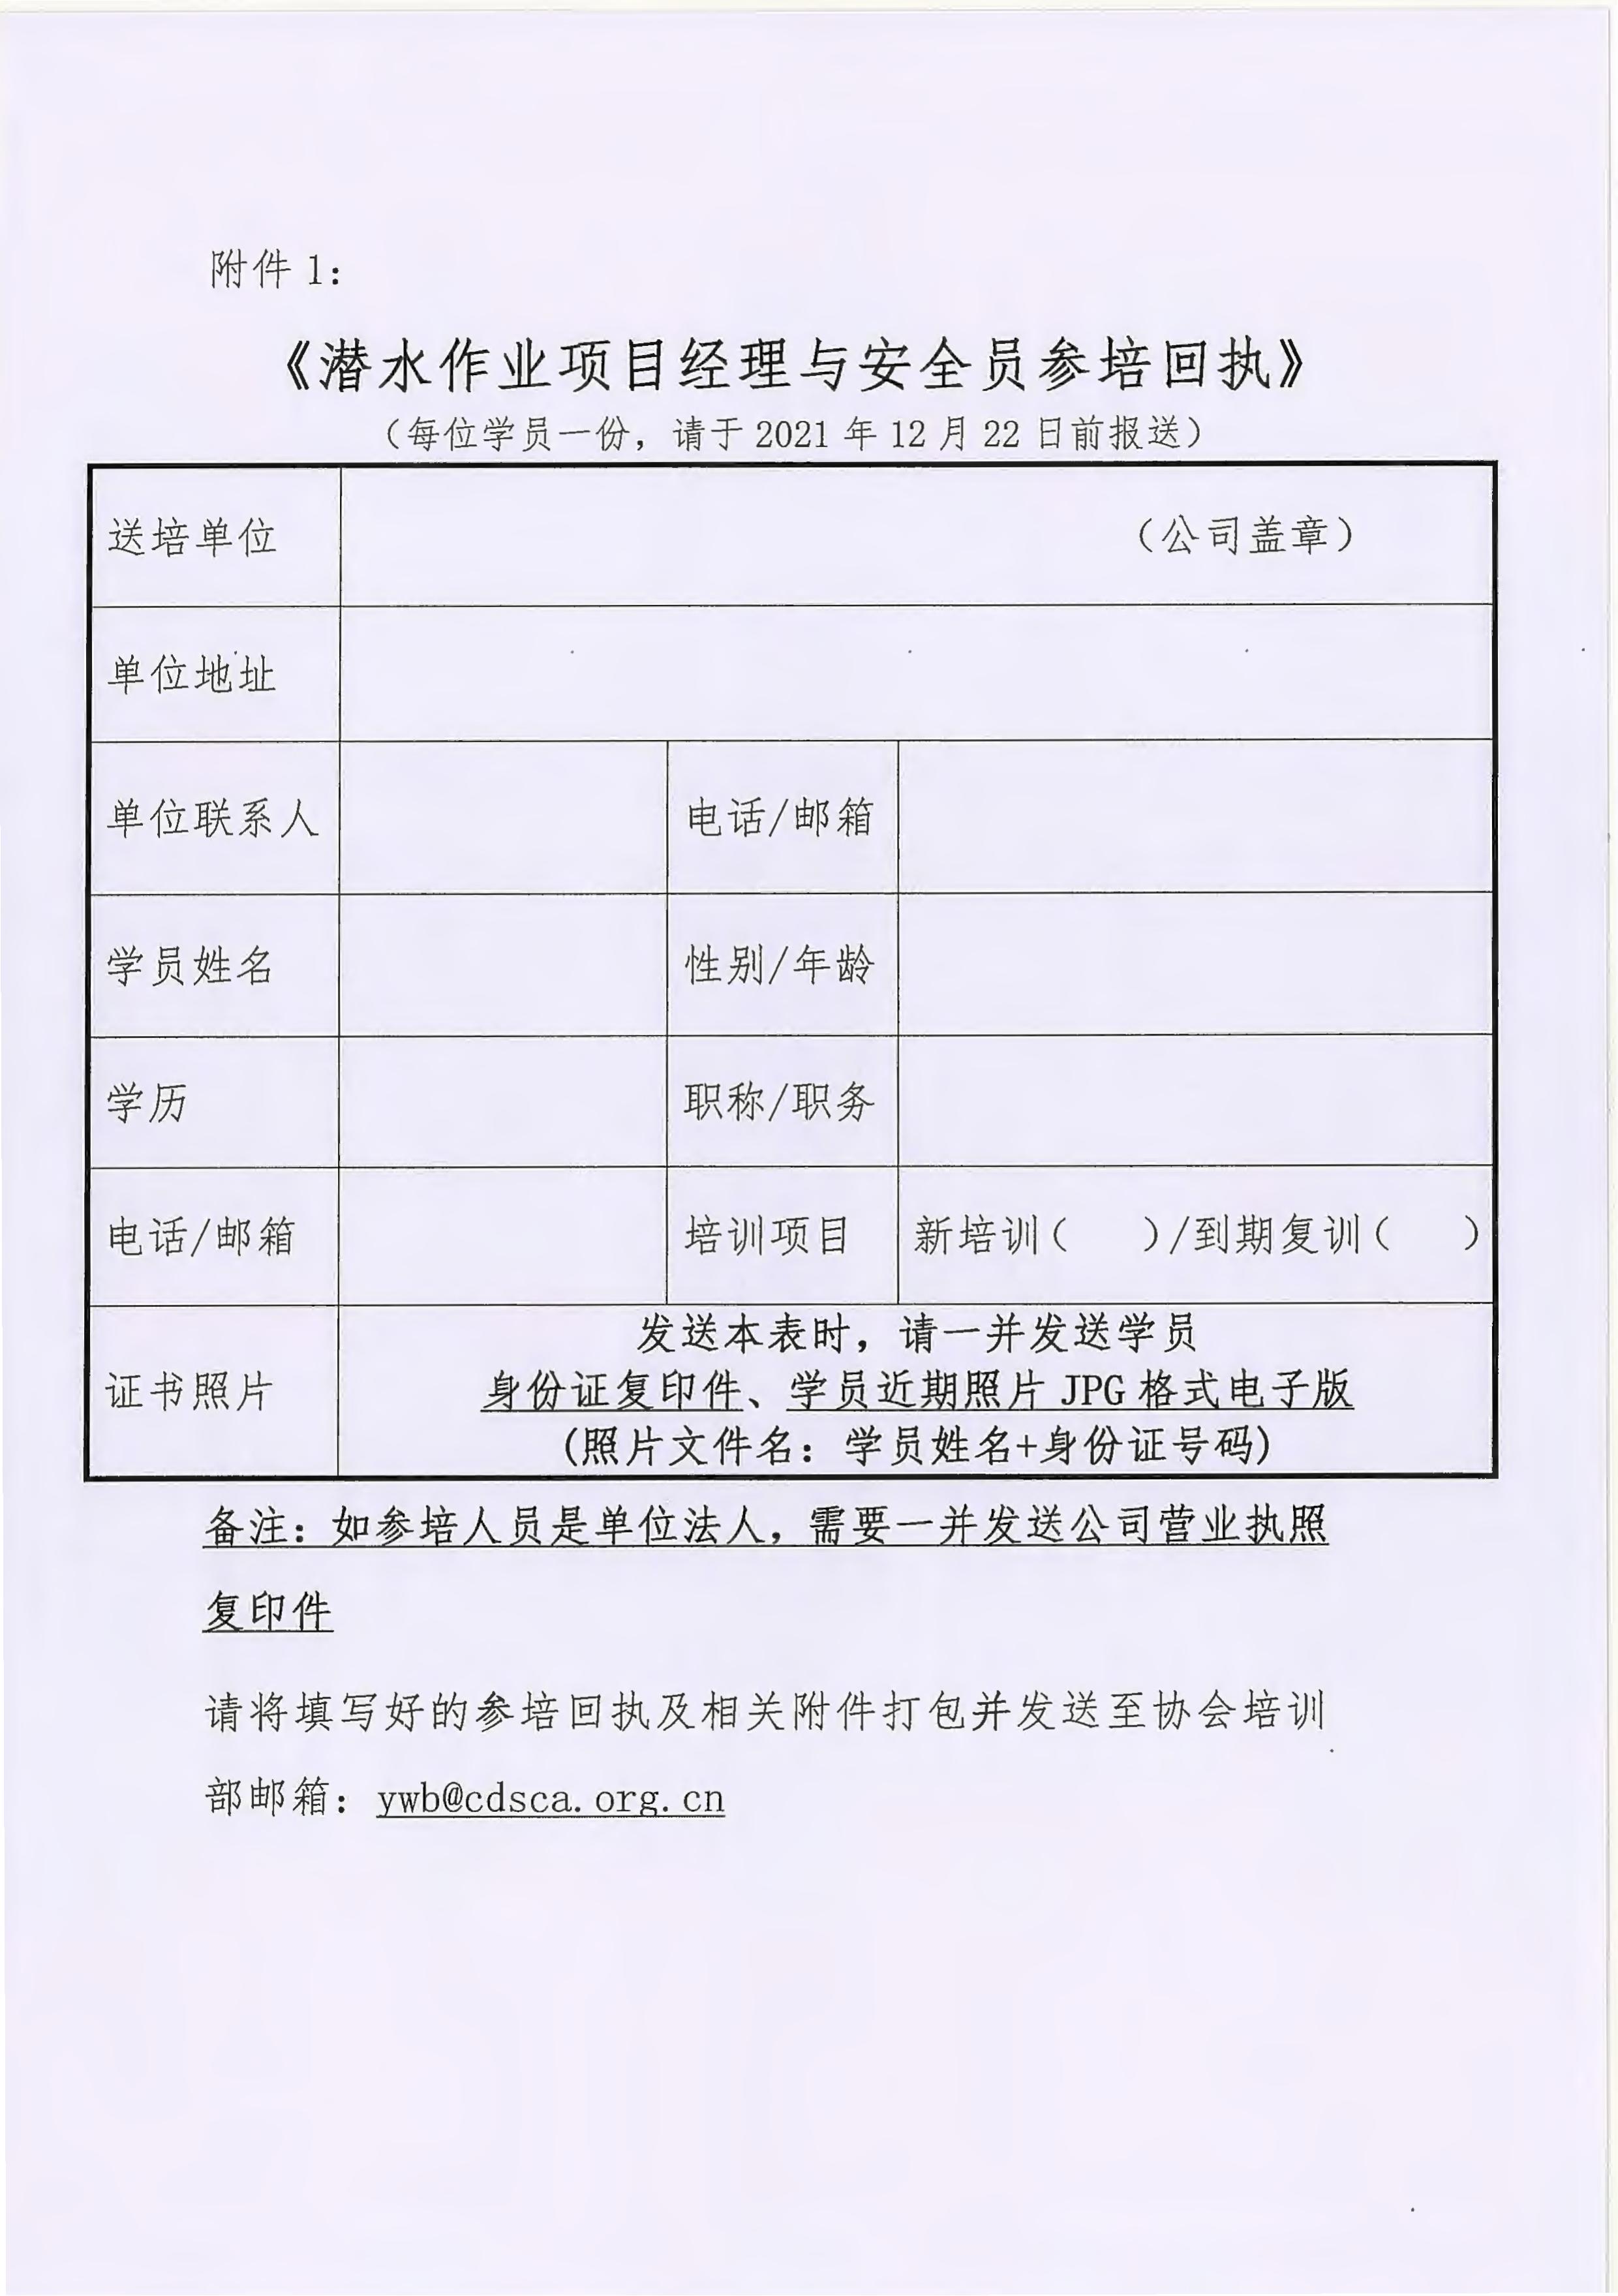 中国潜水打捞行业协会关于举办潜水作业项目经理及安全员线上培训班的通知_03.jpg